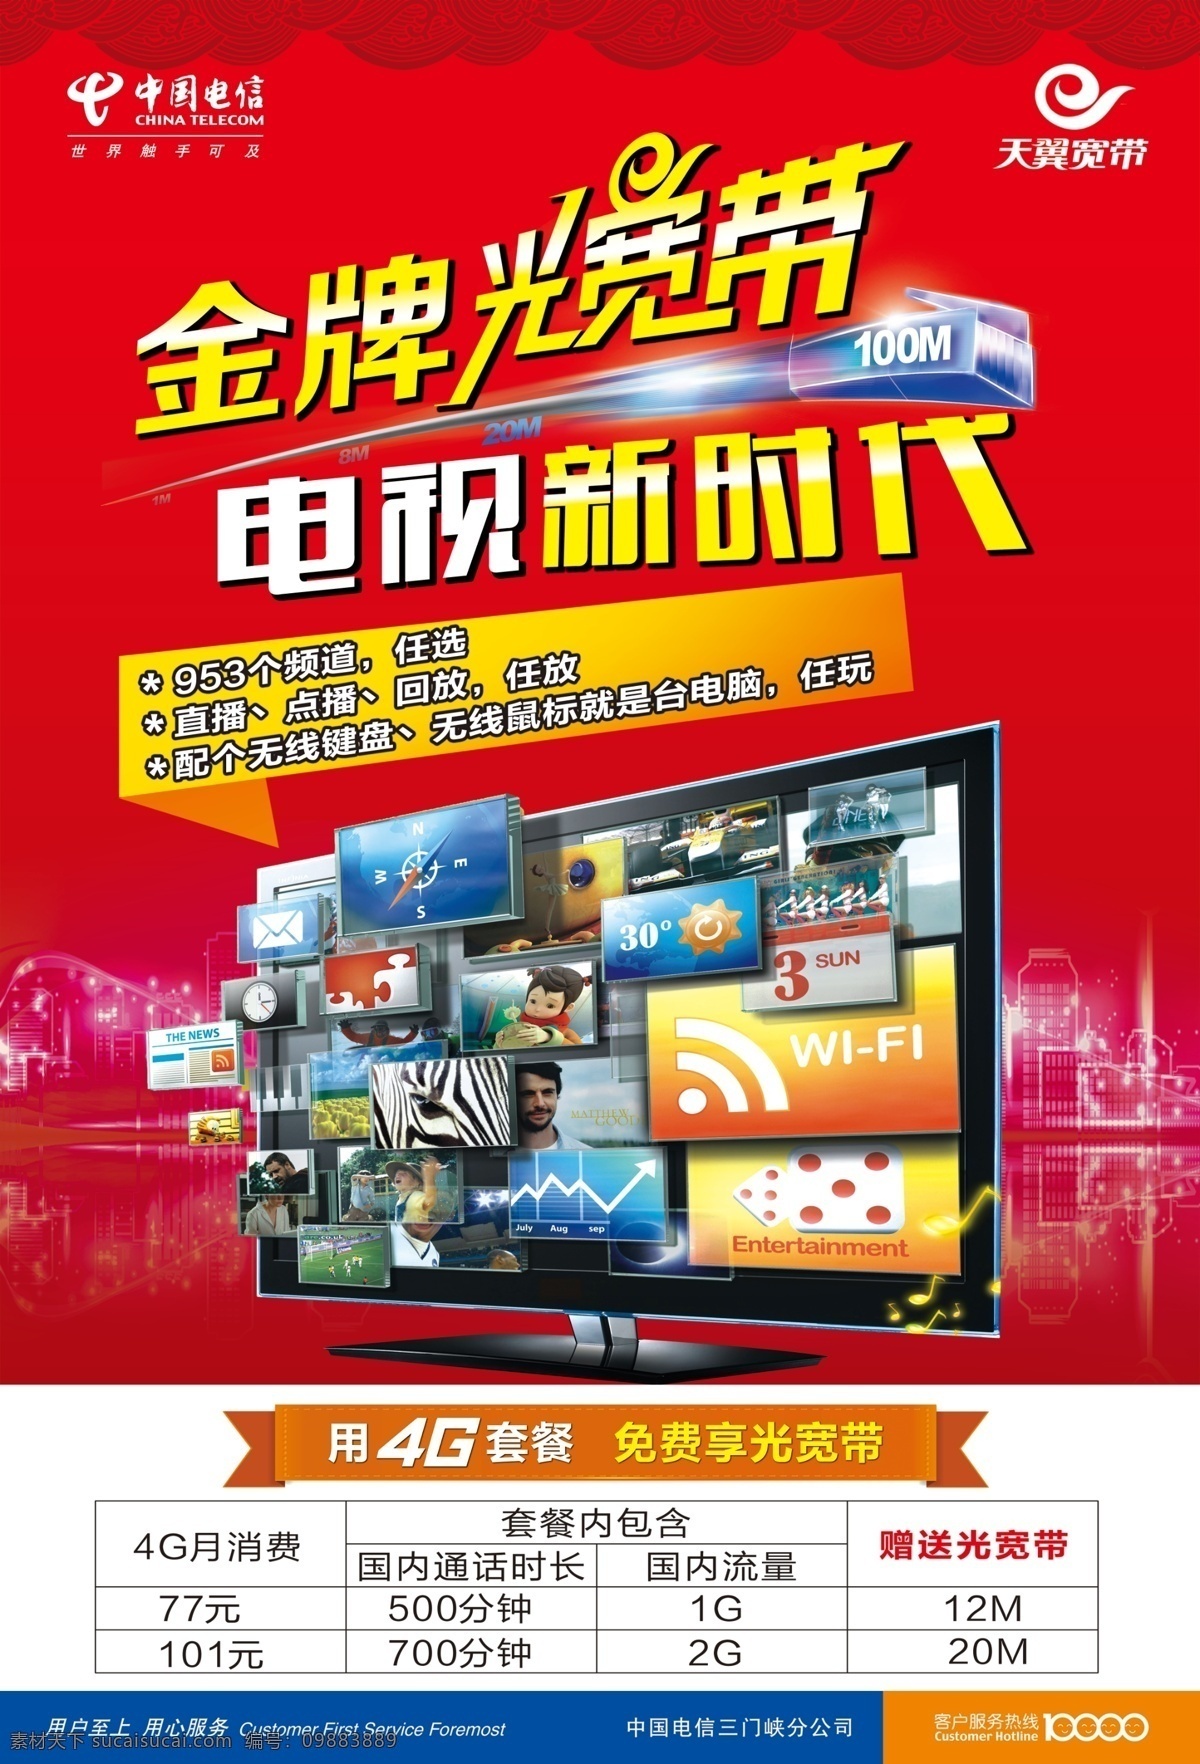 电信光宽带 电视新时代 电信 光宽带 广告 国内广告设计